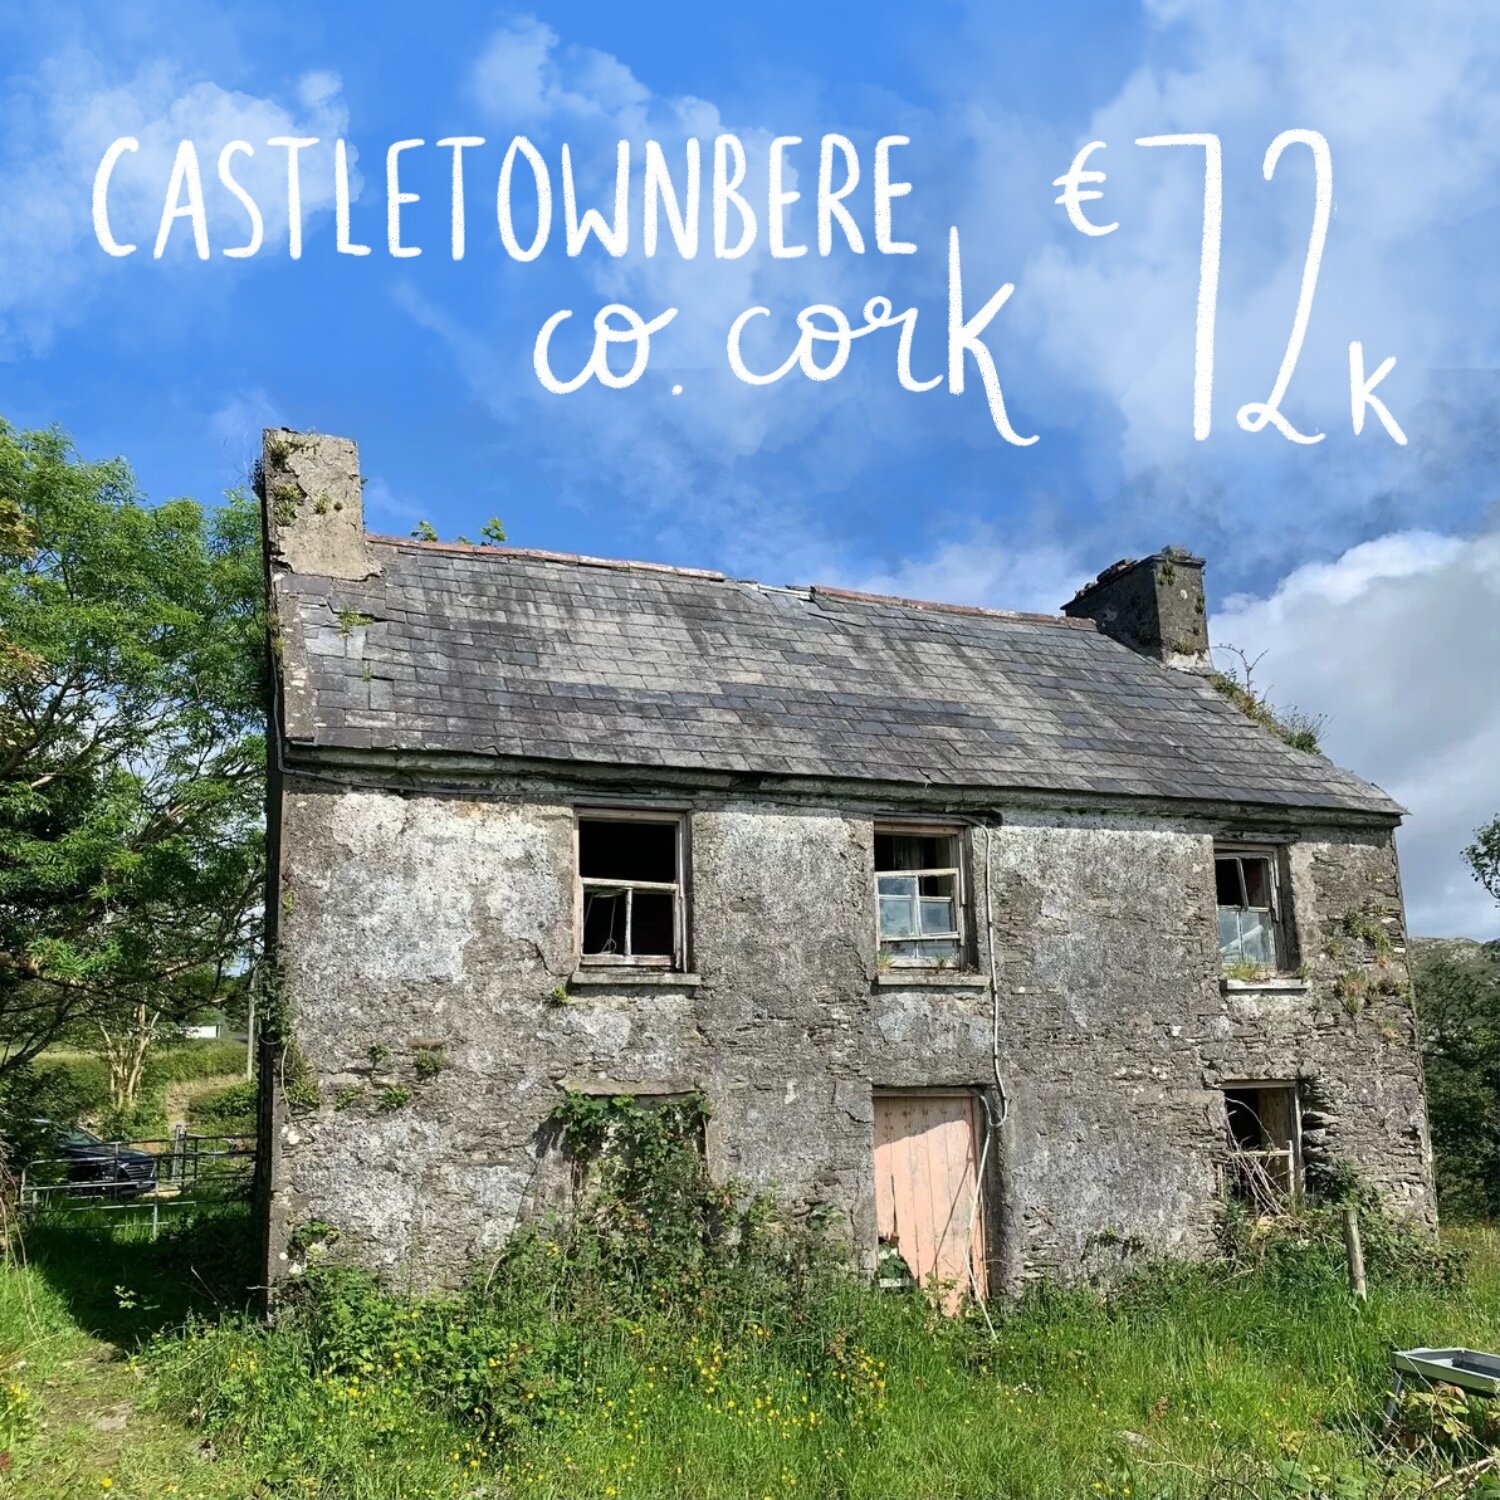 Castletownbere, Co. Cork. €72k